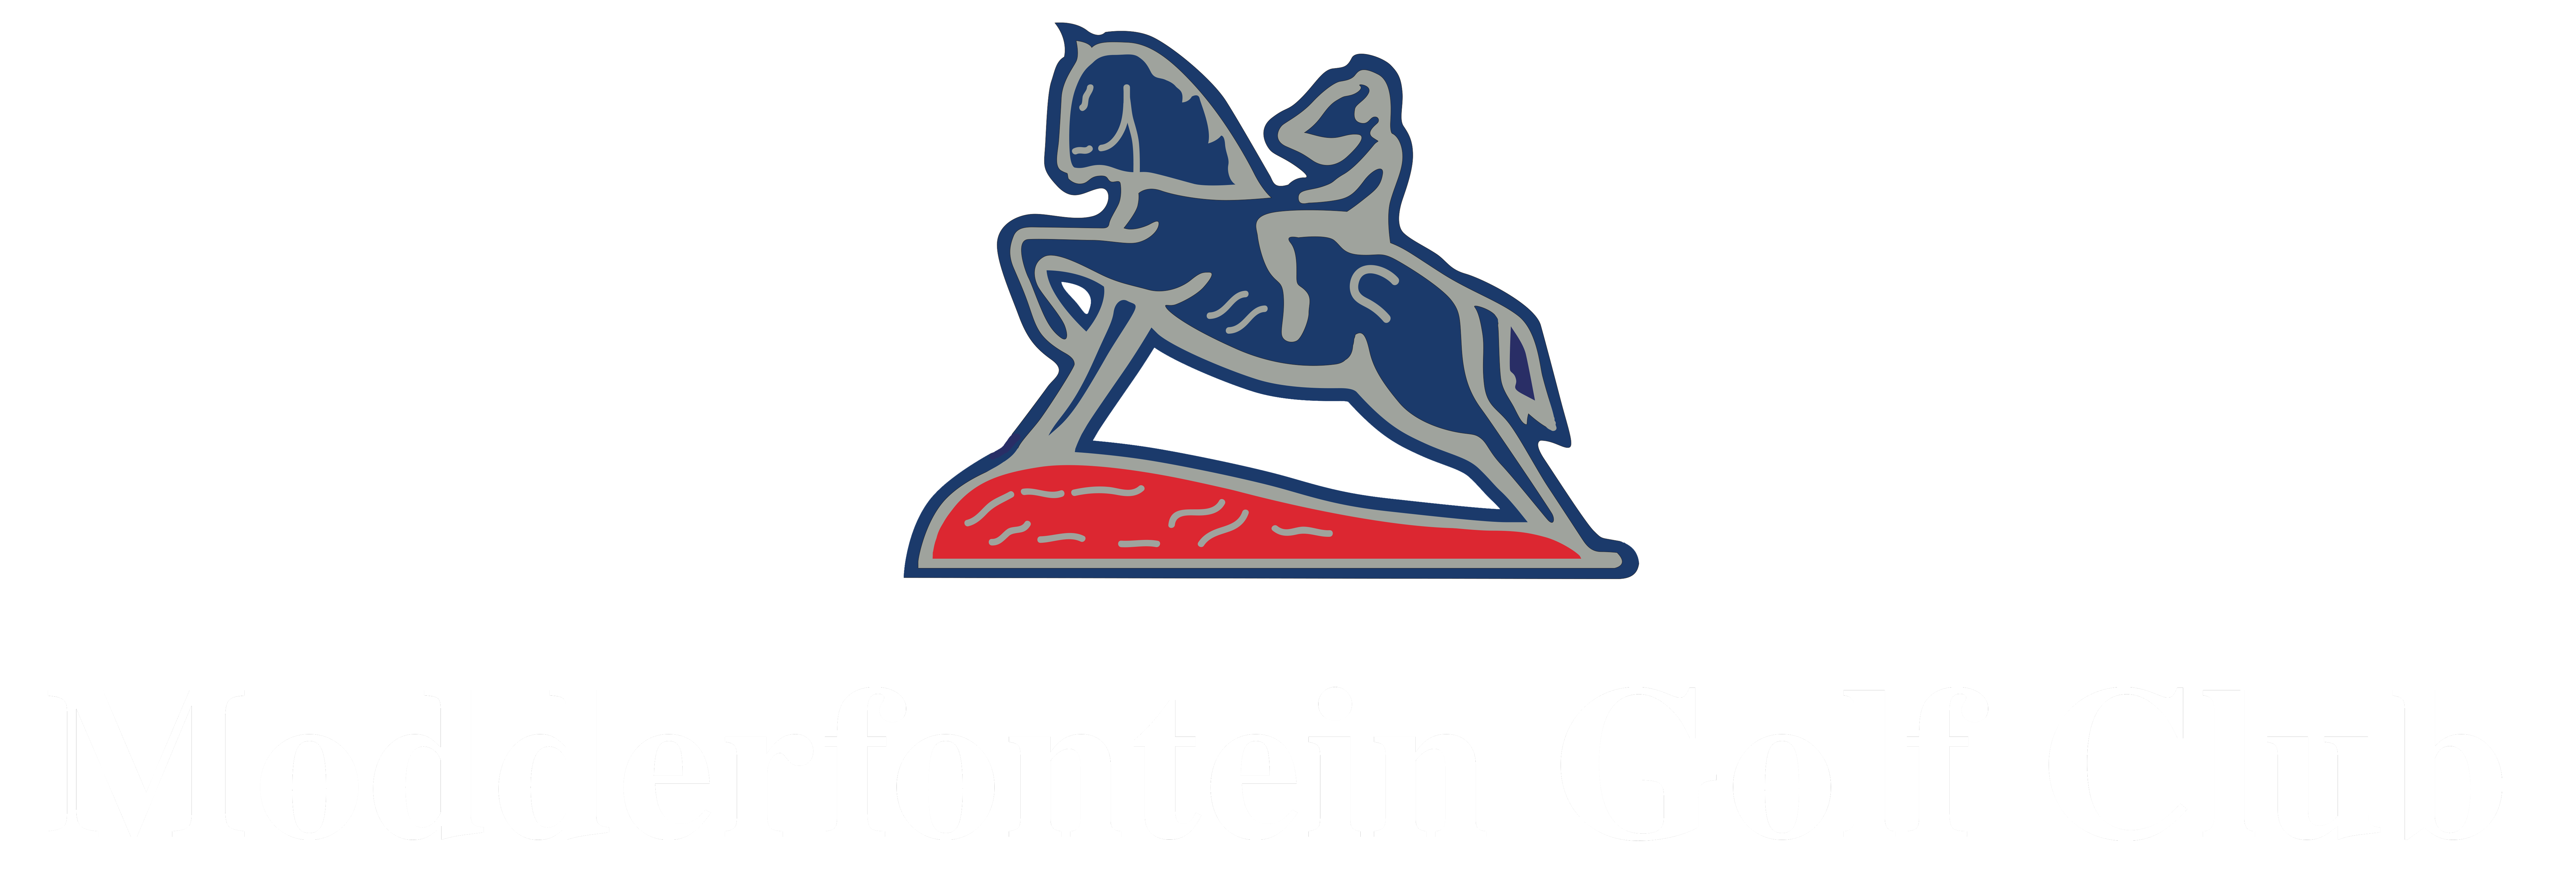 Modderfontein-Golf-Club-Logo_White (1)